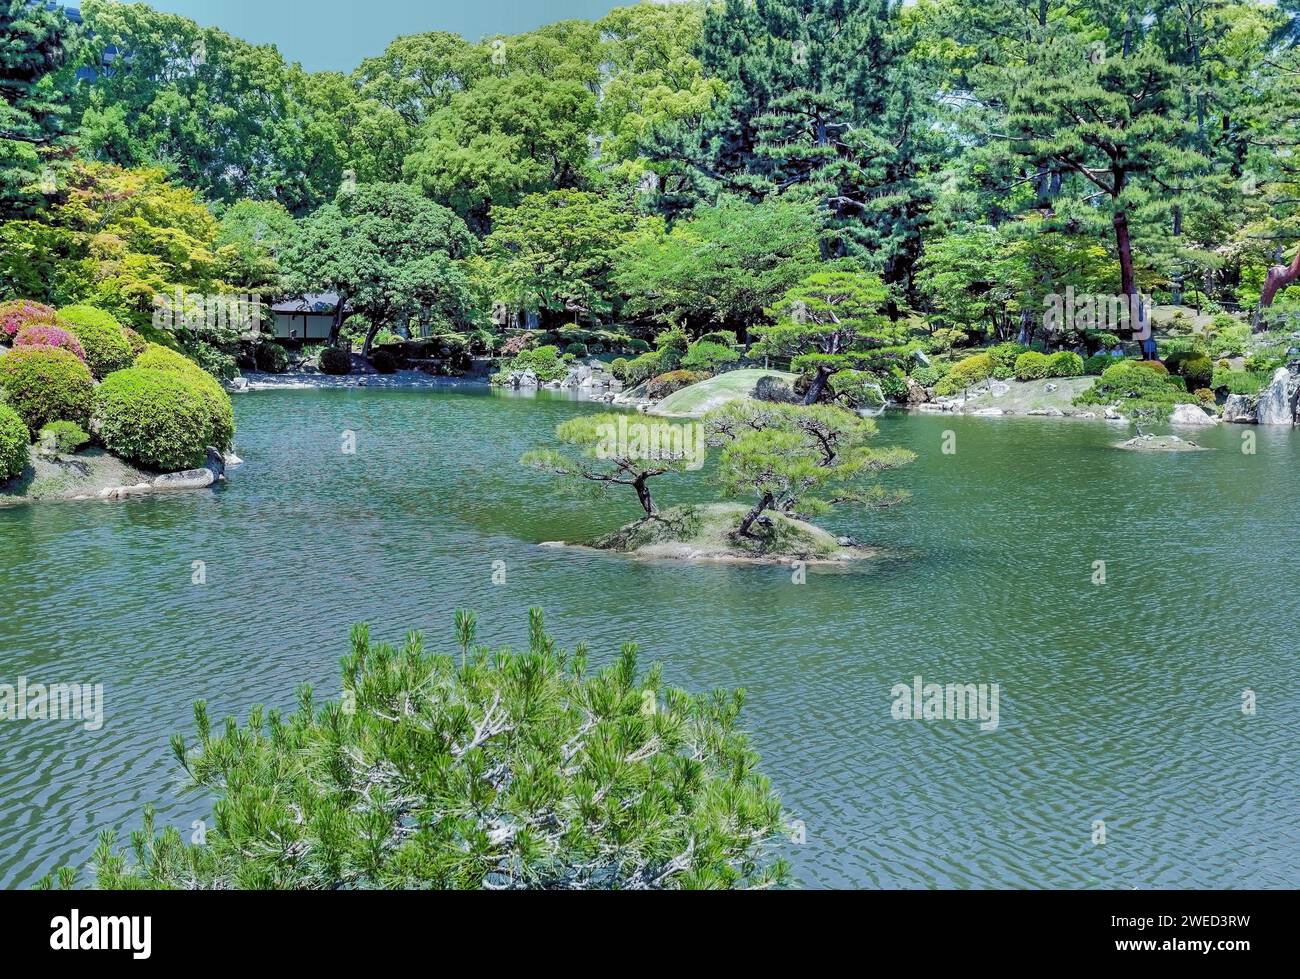 Petite île au milieu du lac dans les jardins de Shukkeien à Hiroshima, Japon Banque D'Images